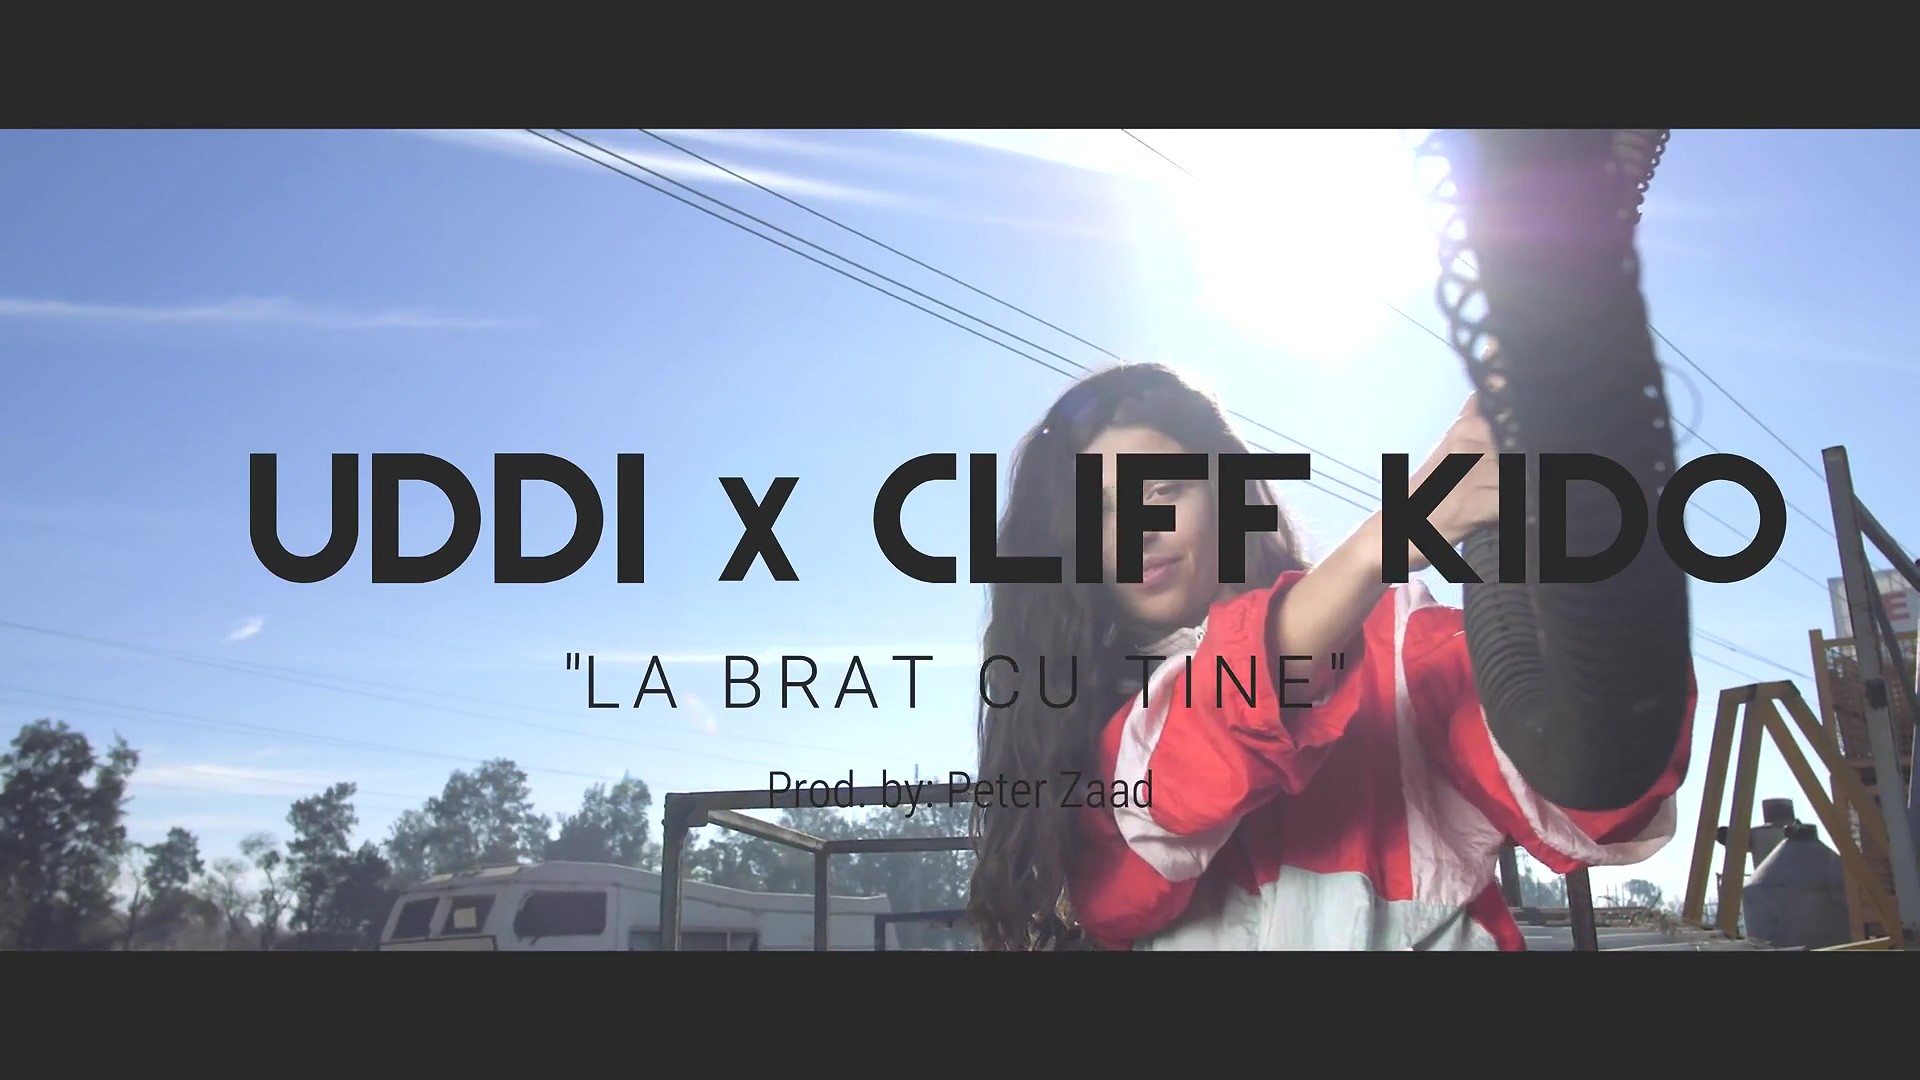 UDDI x Cliff Kido – La brat cu tine